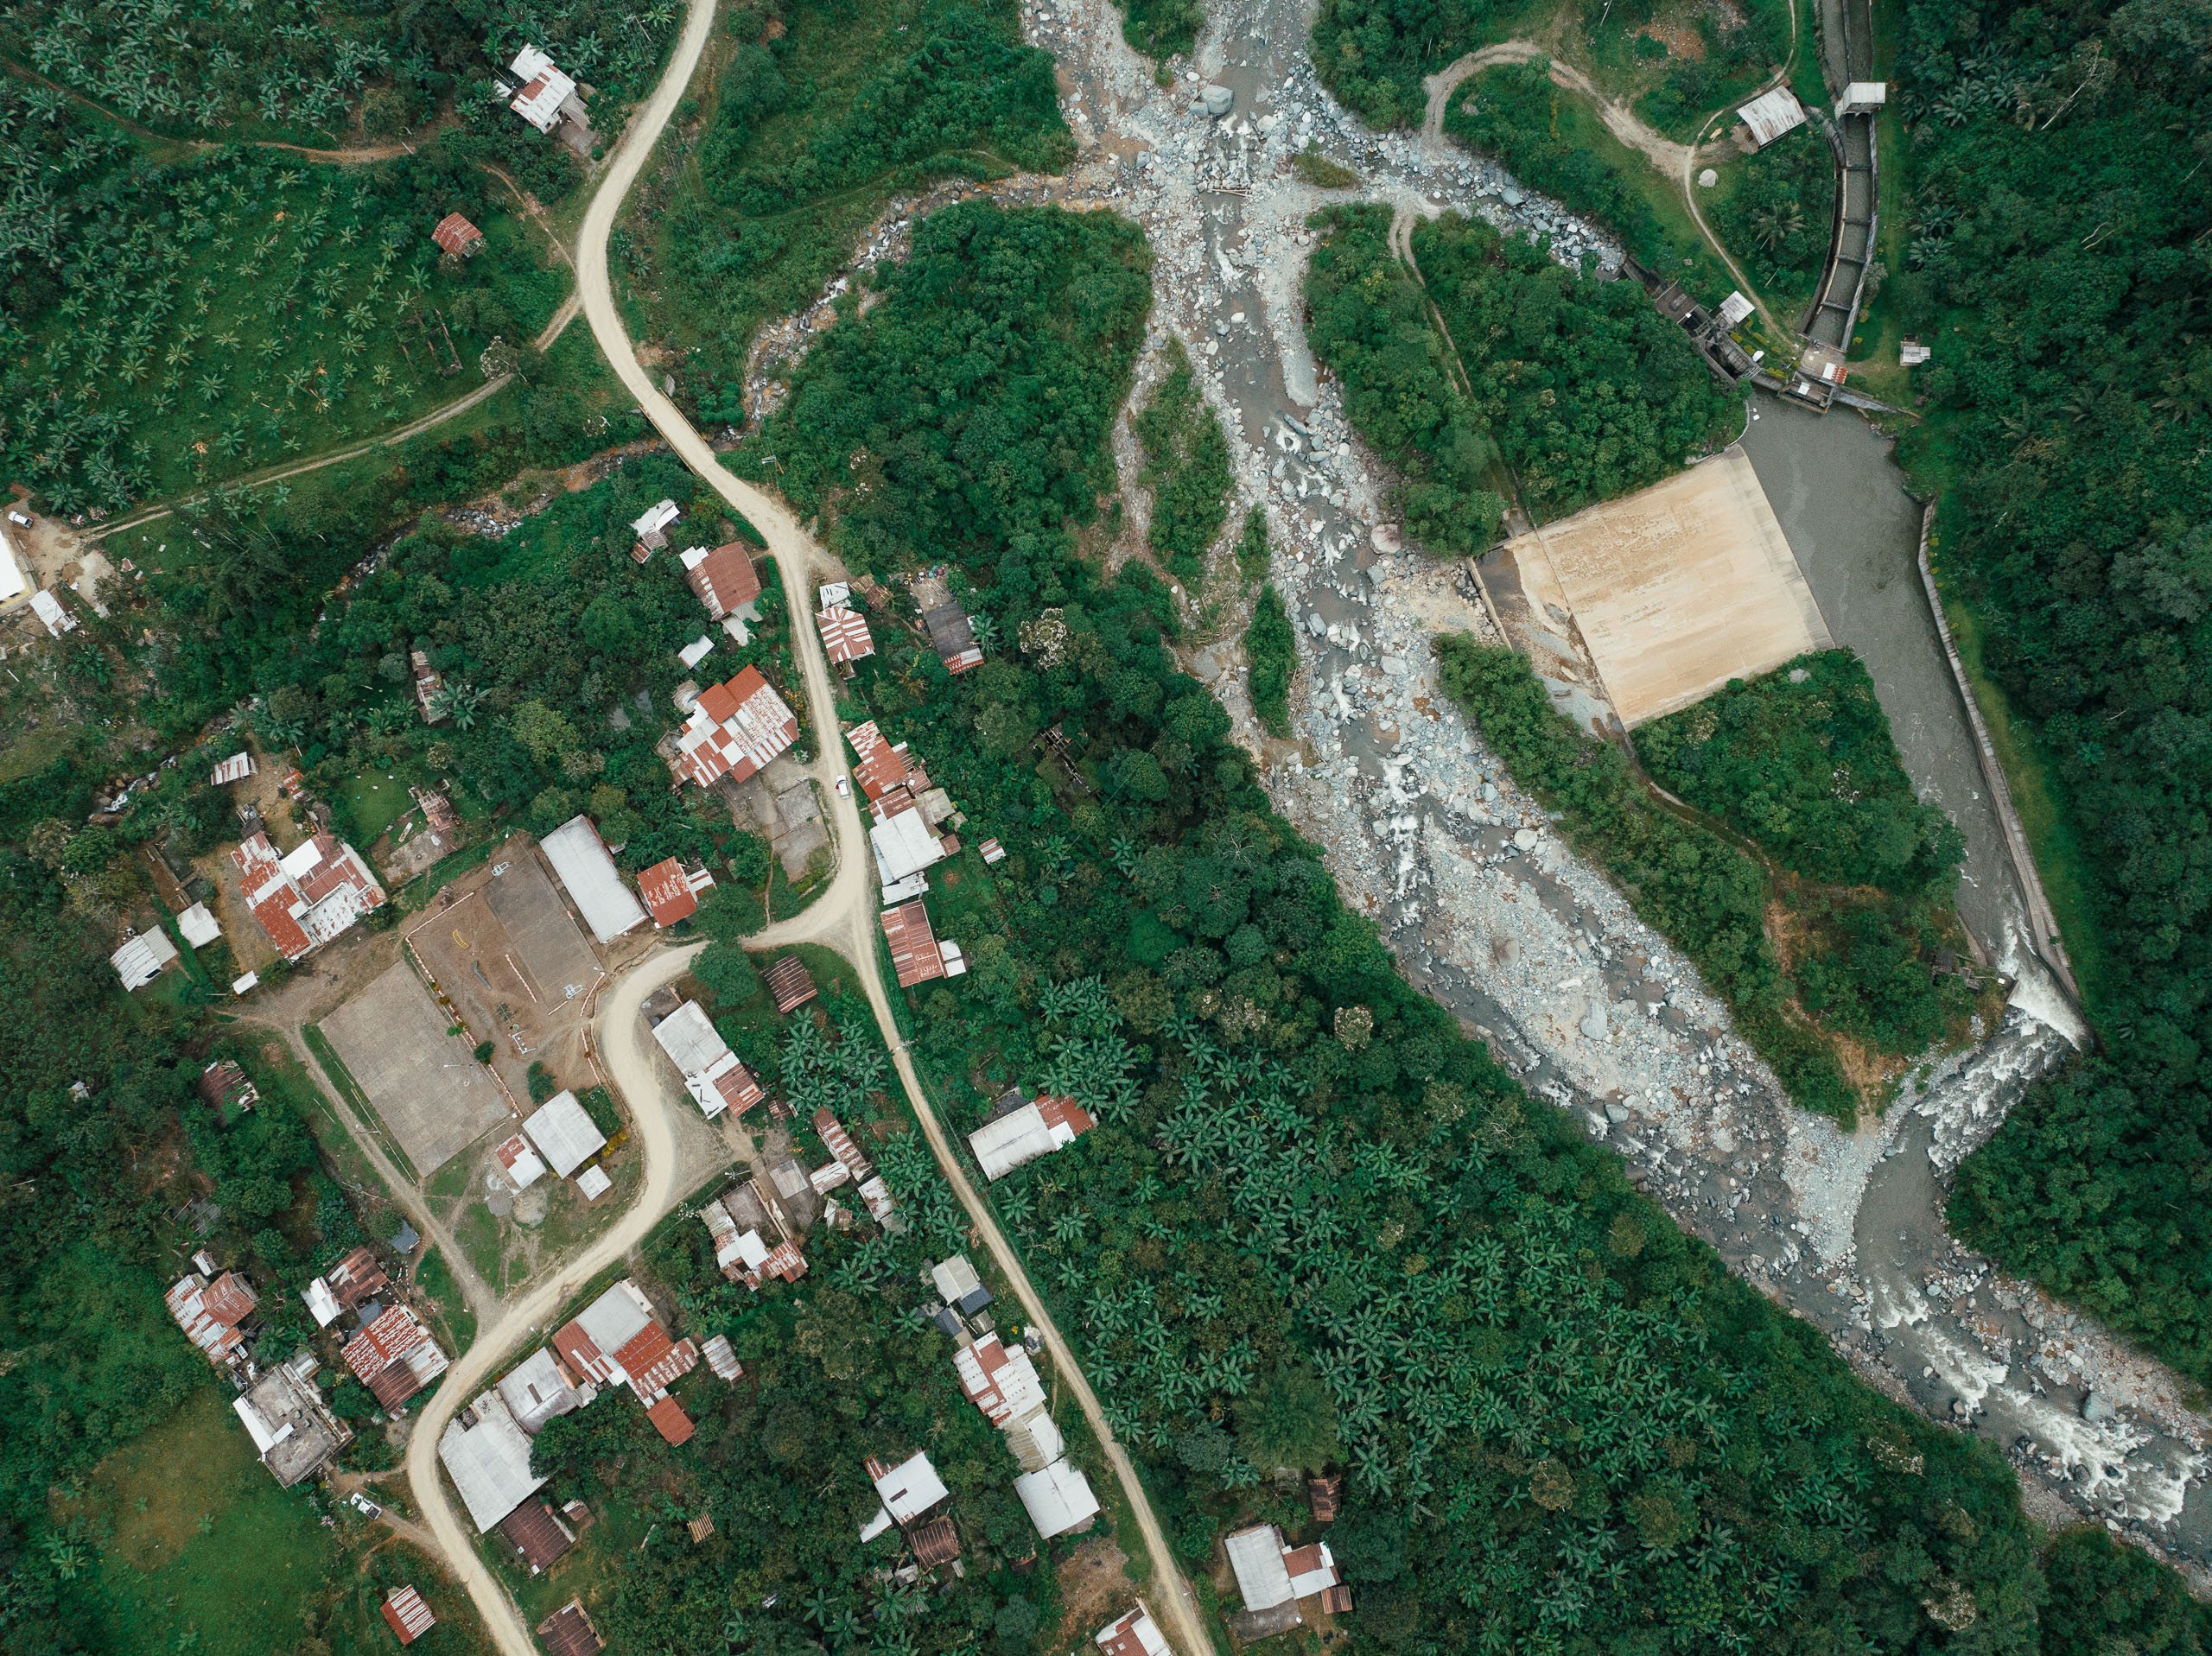 Vista aérea do canal da usina hidrelétrica de San José del Tambo (à direita), próxima à comunidade de San Pablo de Amalí